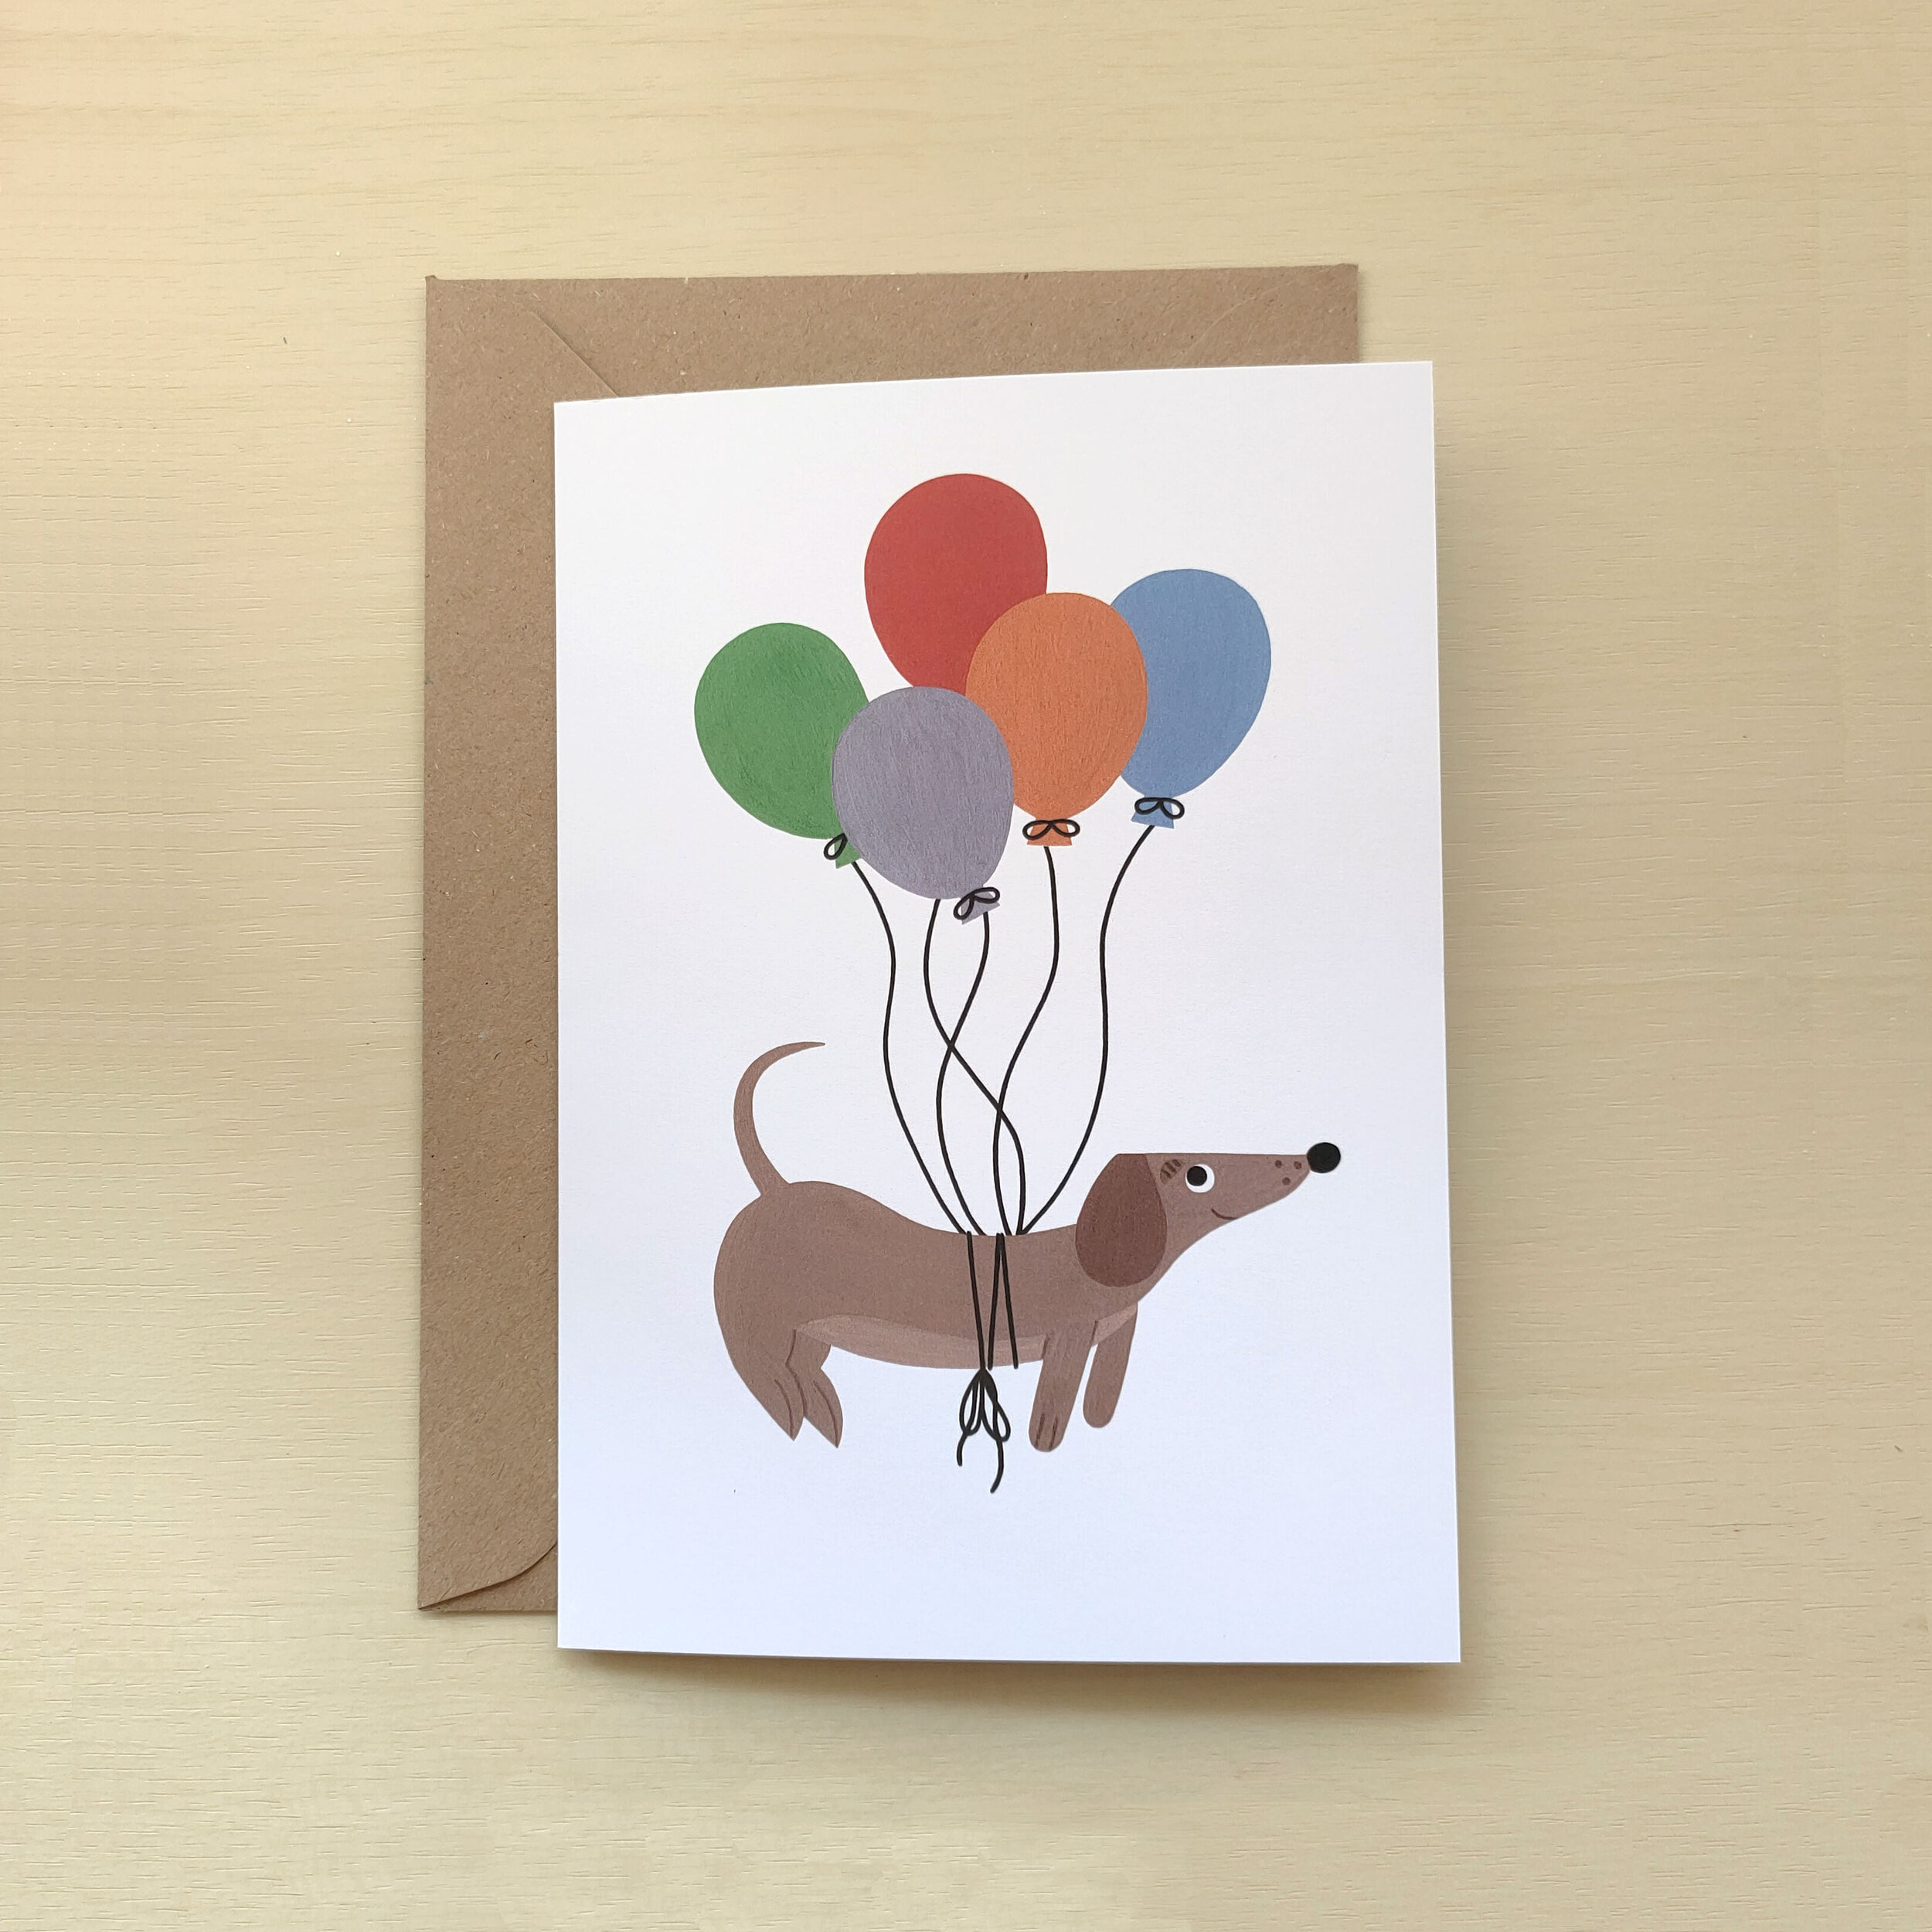 Sausage dog balloons card.jpg